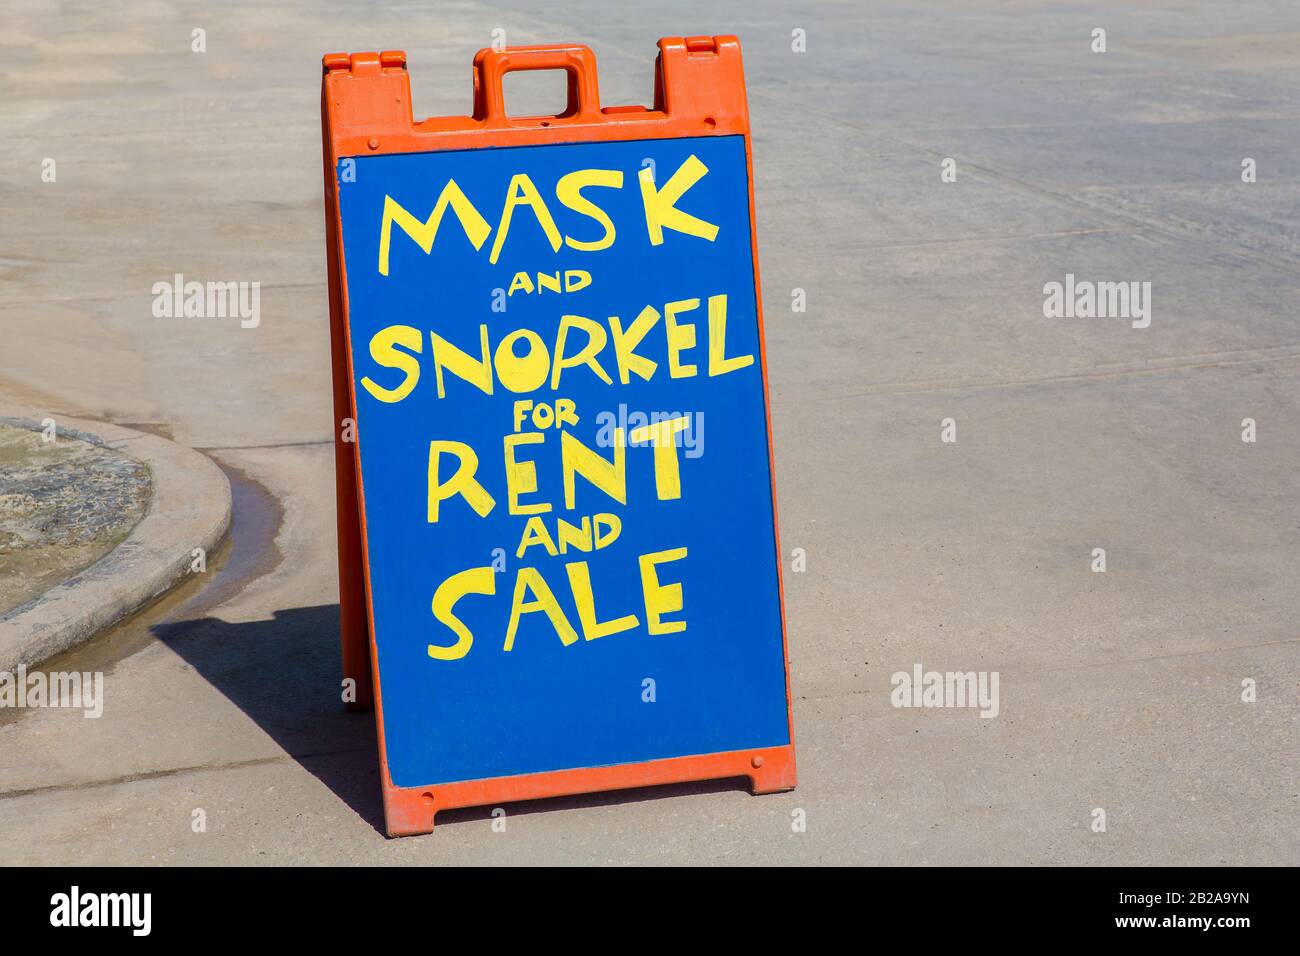 Panneau d'affichage à louer ou à acheter de masque de plongée et de plongée avec tuba Banque D'Images